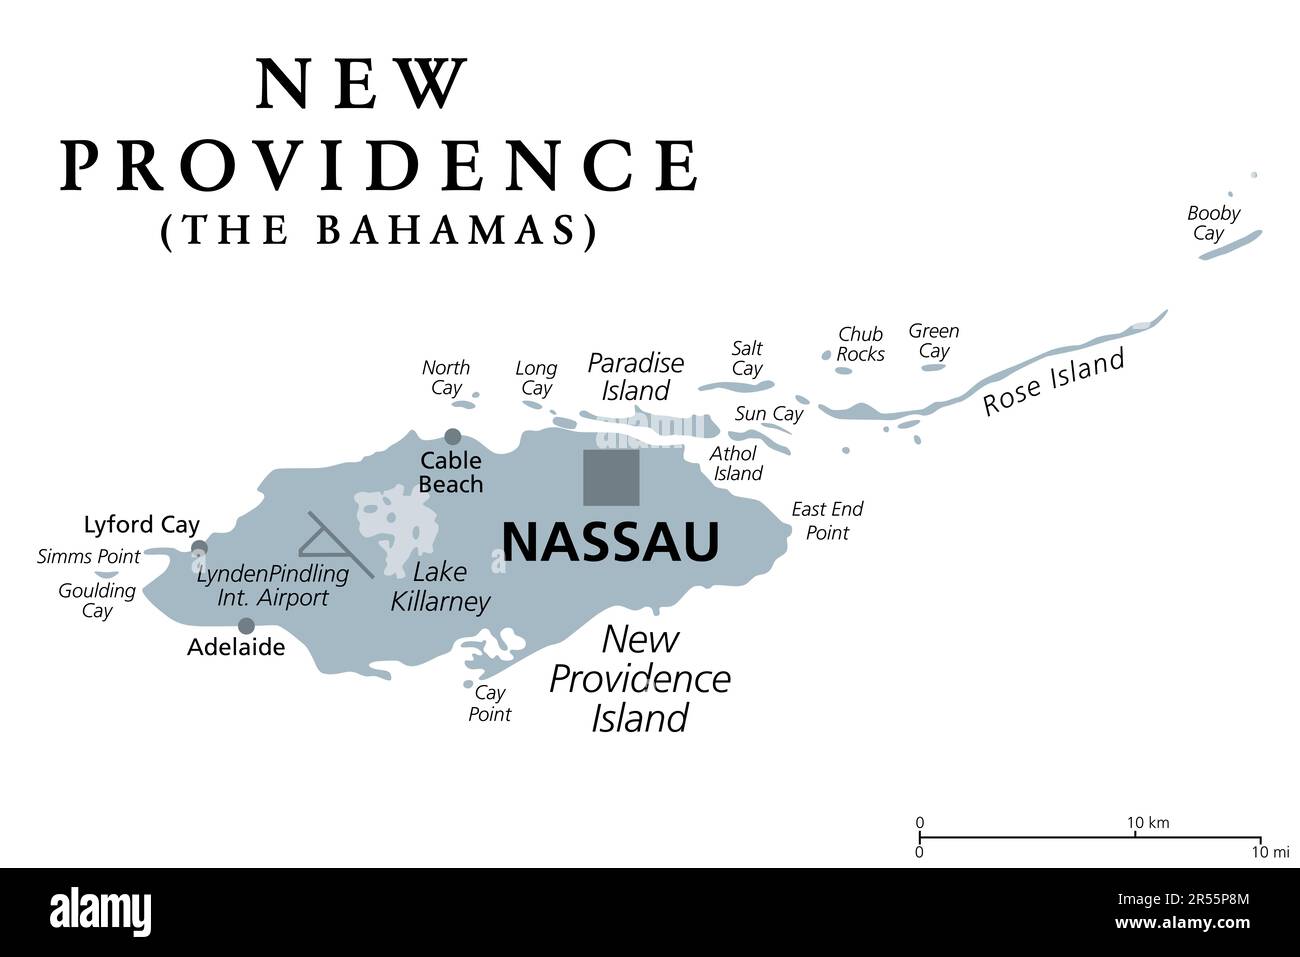 New Providence Island, mappa politica grigia, con Nassau, capitale delle Bahamas, un paese insulare all'interno delle Indie occidentali nel Nord Atlantico. Foto Stock